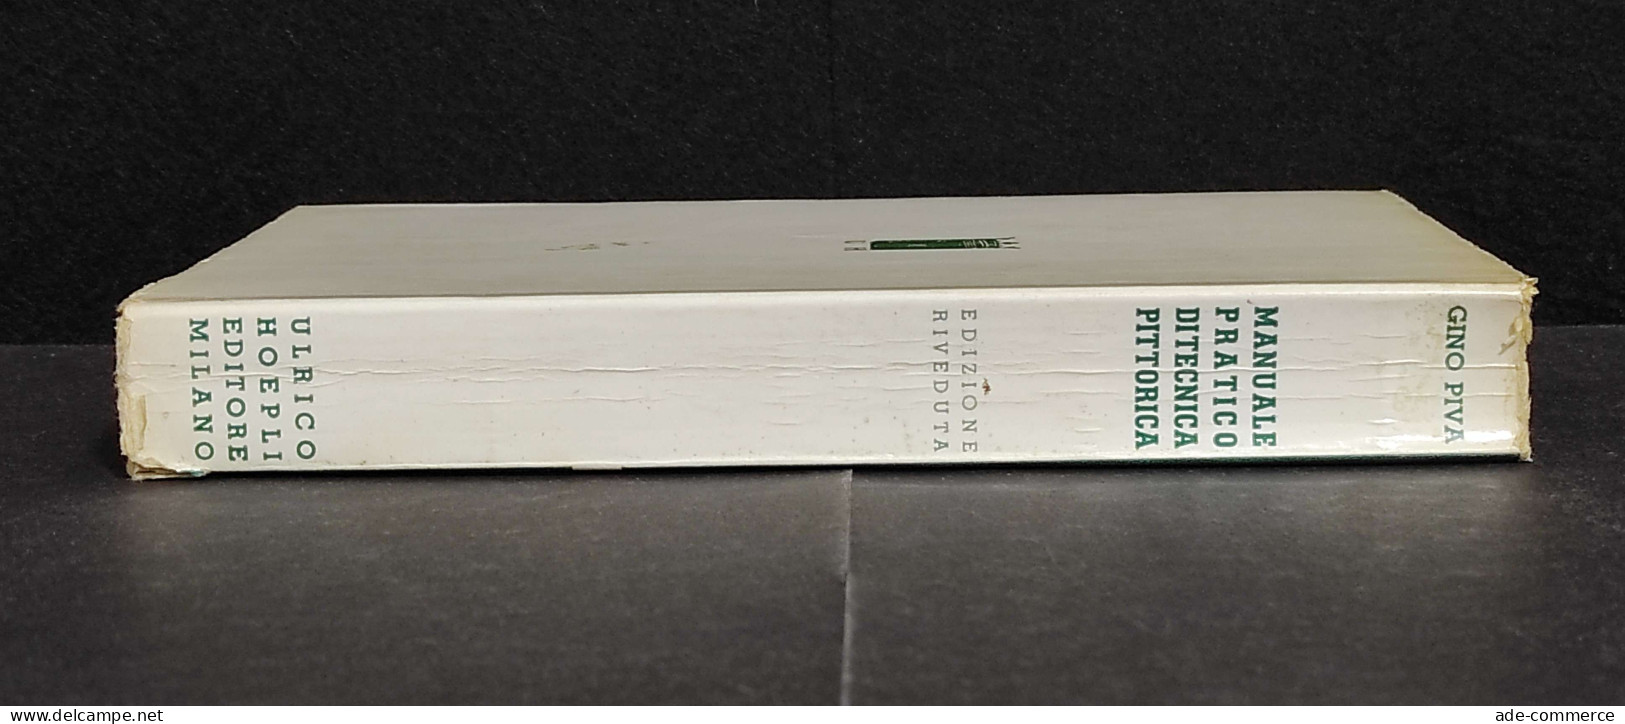 Manuale Pratico Di Tecnica Pittorica - G. Piva - Ed. Hoepli - 1964 - Manuali Per Collezionisti